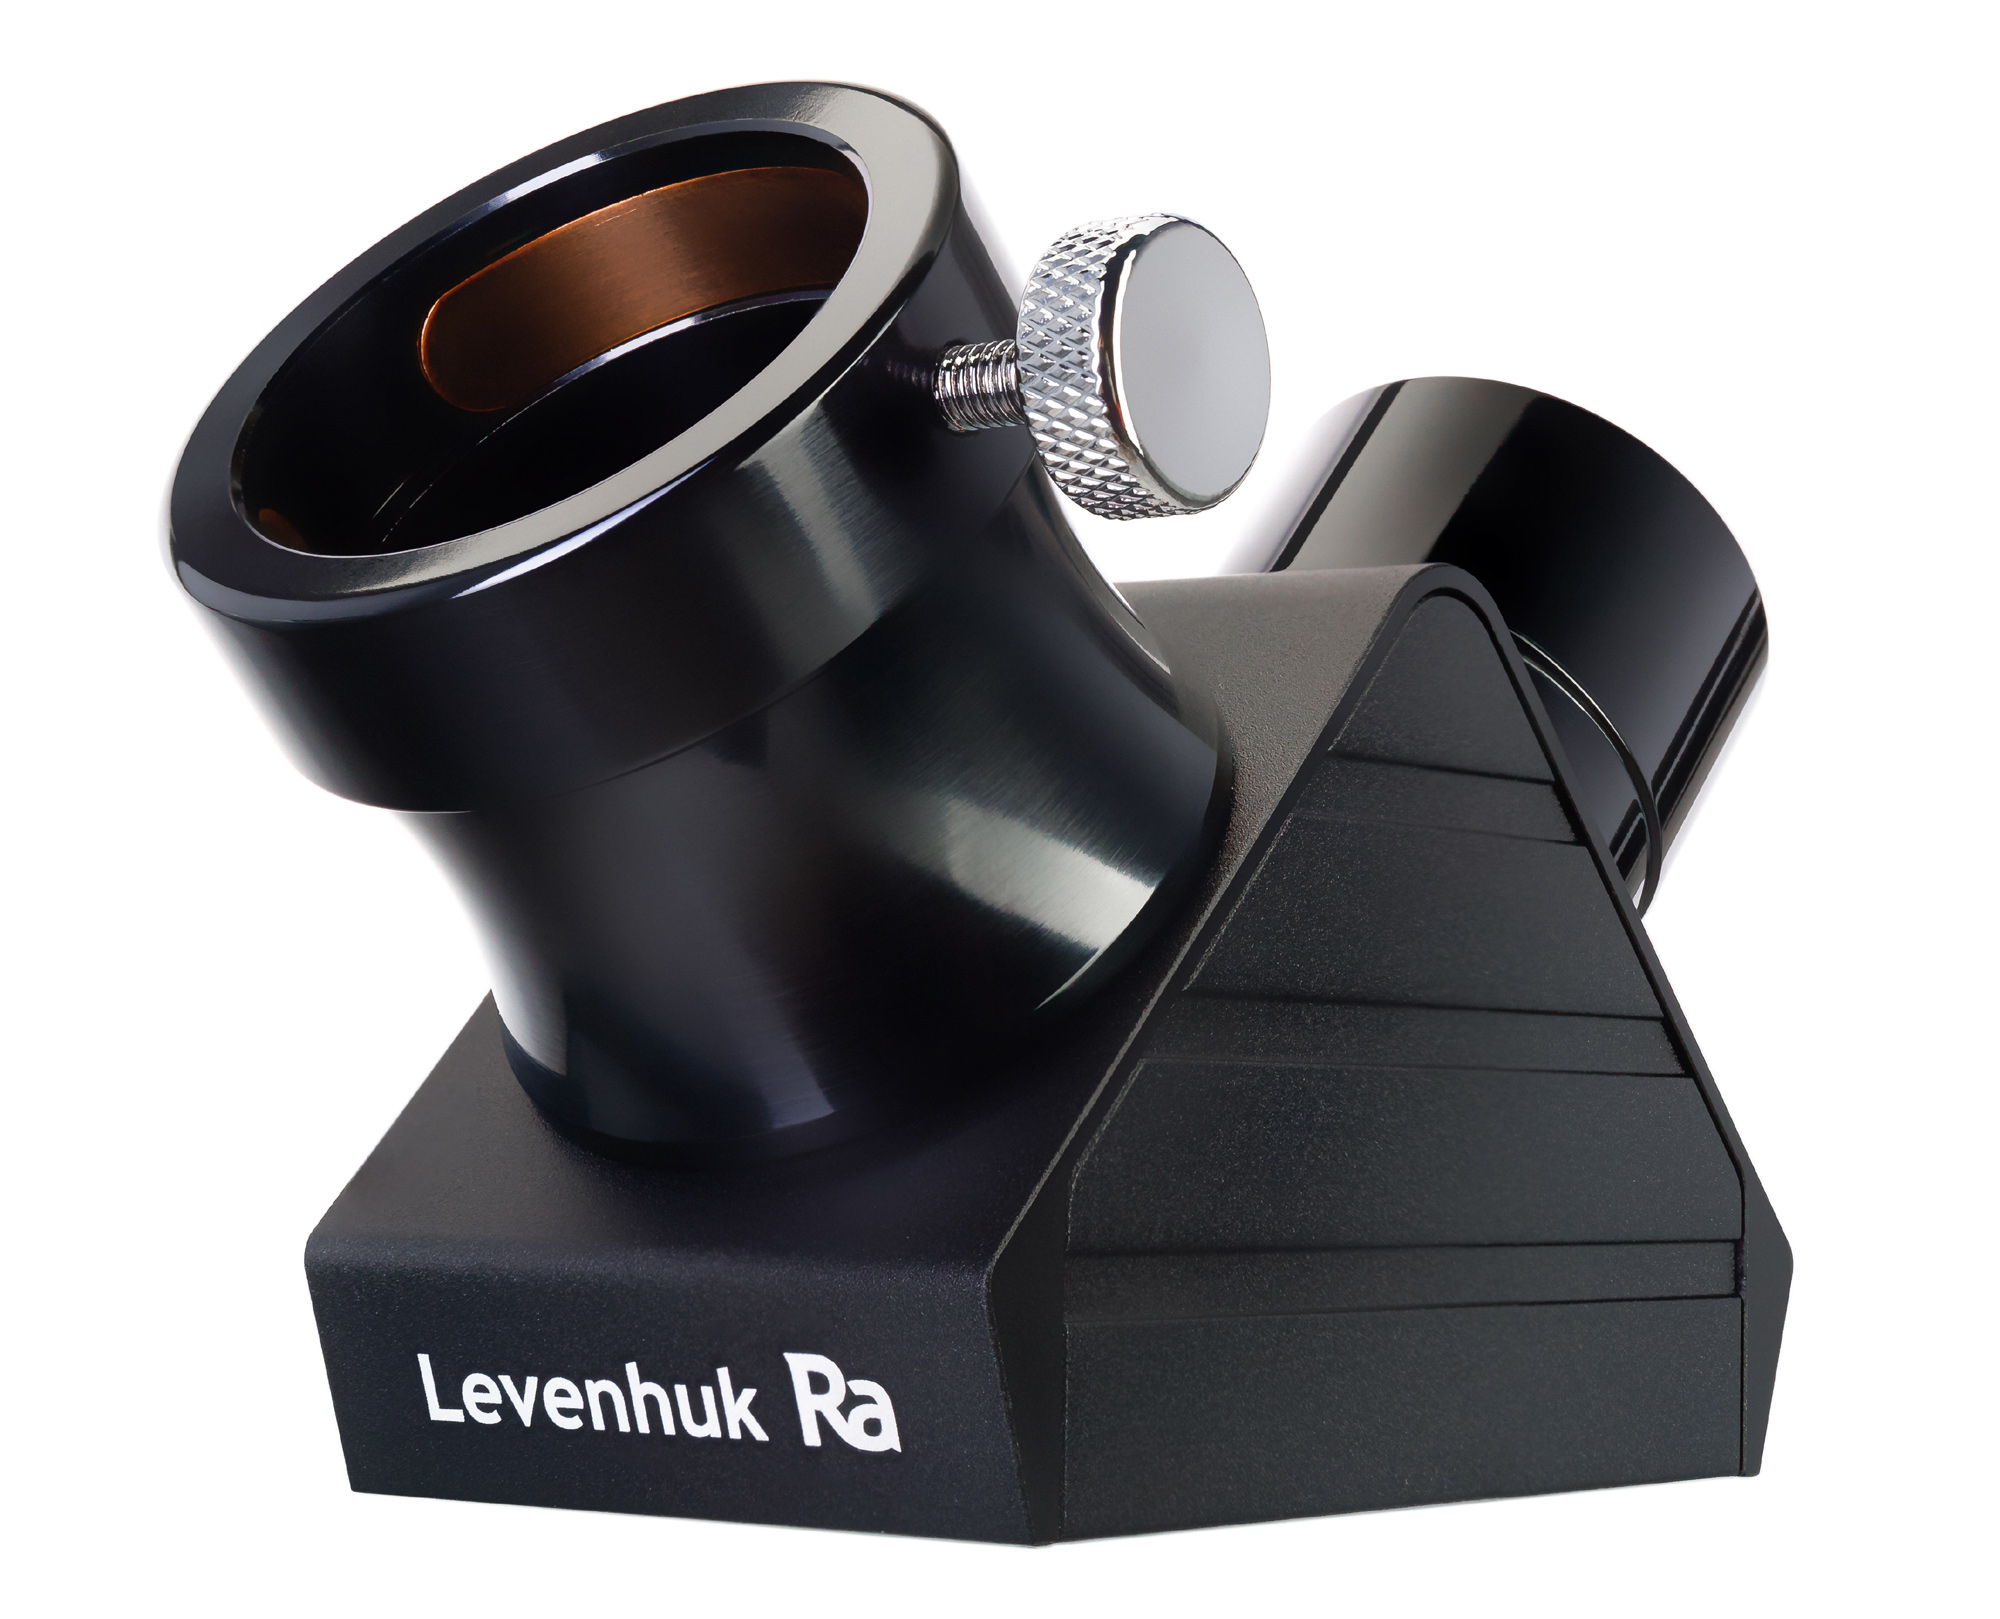 Levenhuk Ra R80 ED Doublet Carbon Kit v3 купить по оптимальной цене,  доставка по России, гарантия качества